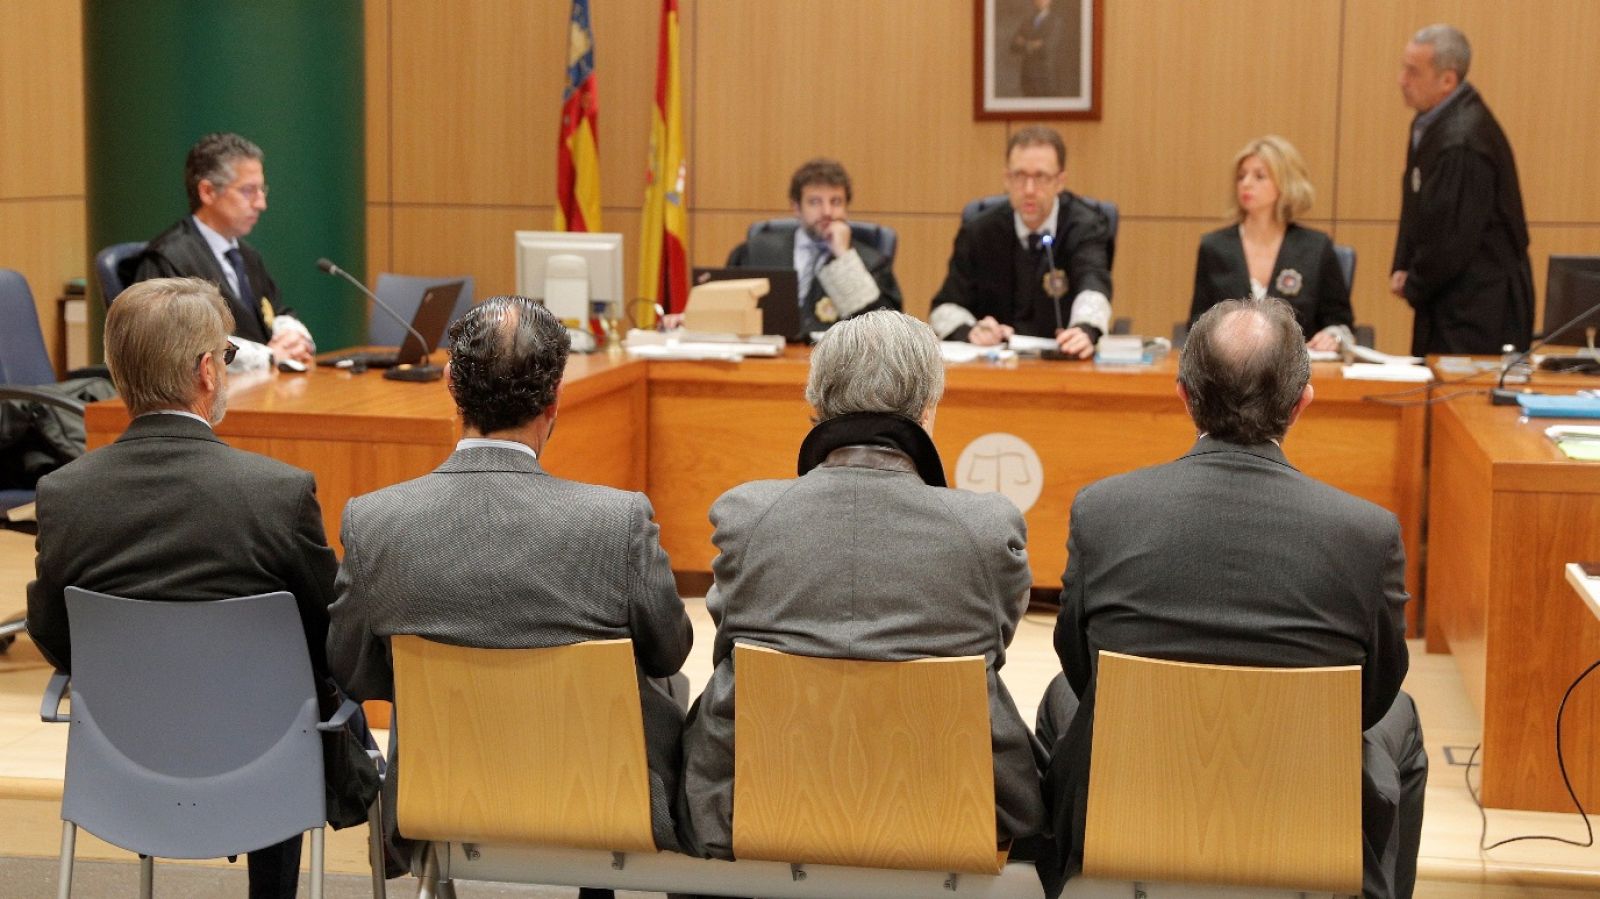 L'informatiu - Comunitat Valenciana: L'Informatiu - Comunitat Valenciana 2 - 08/01/19 | RTVE Play